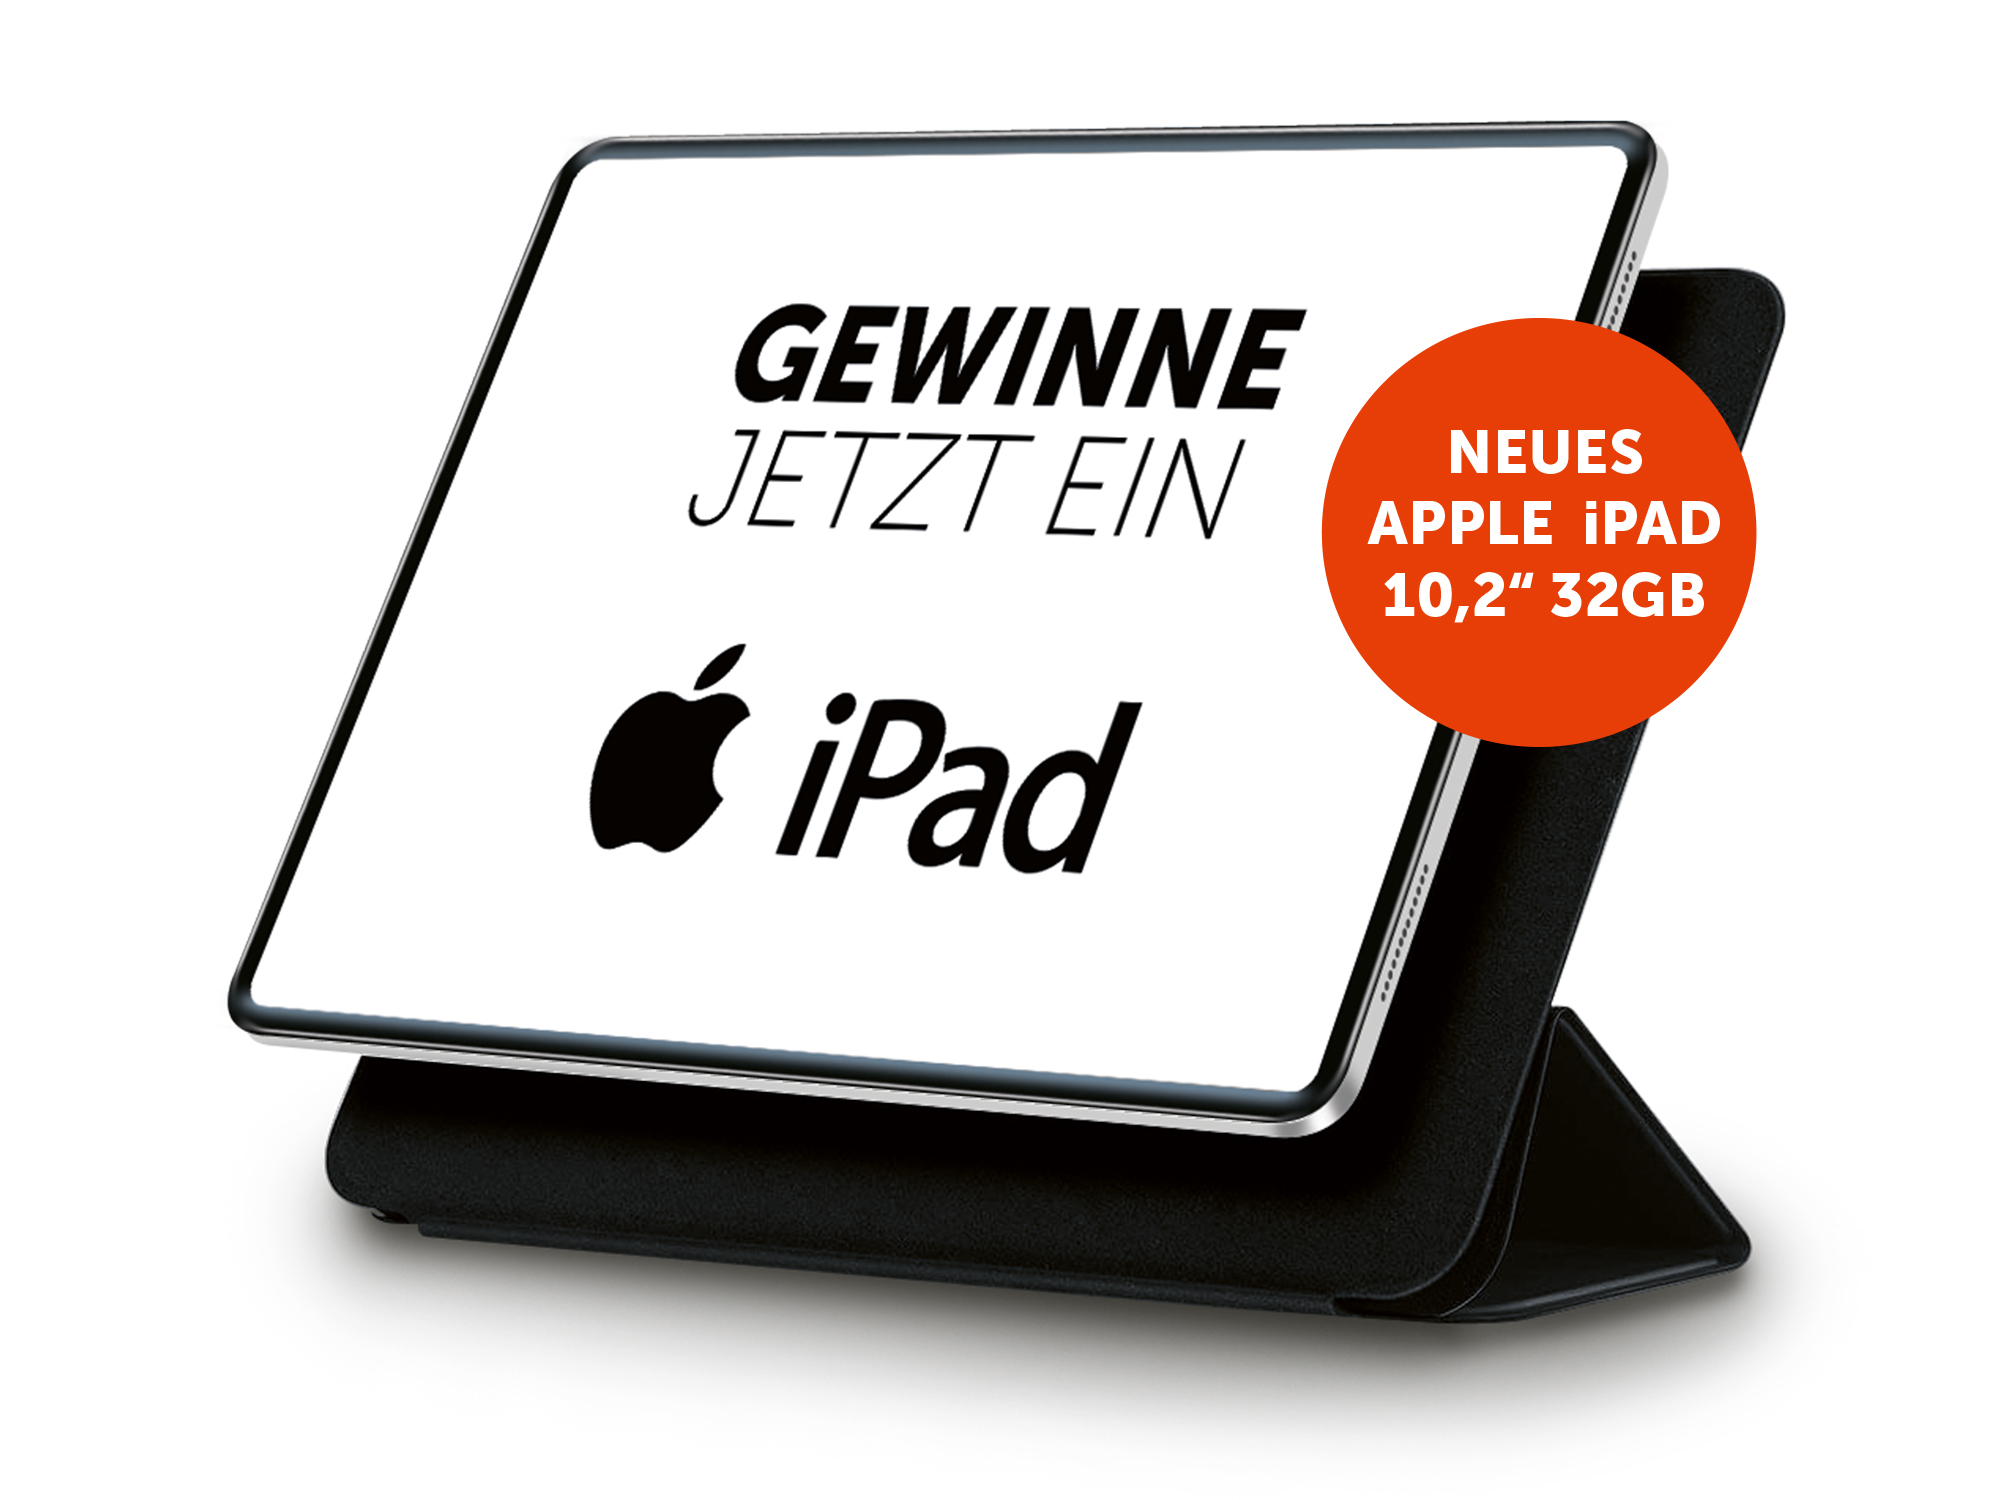 Apple iPad 32 GB - Jetzt gewinnen!